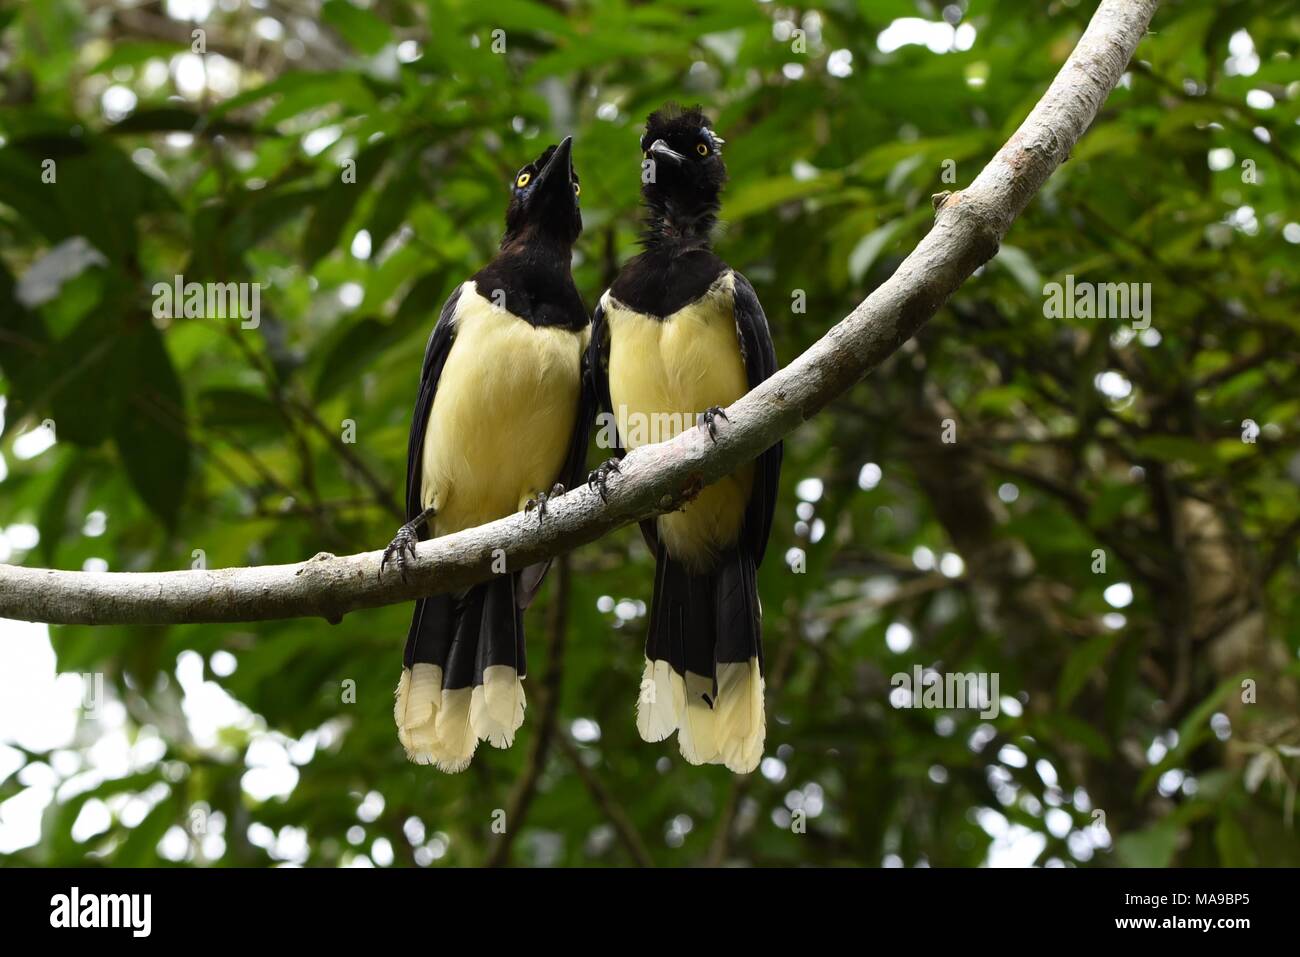 Gelbe liebesvögel -Fotos und -Bildmaterial in hoher Auflösung – Alamy